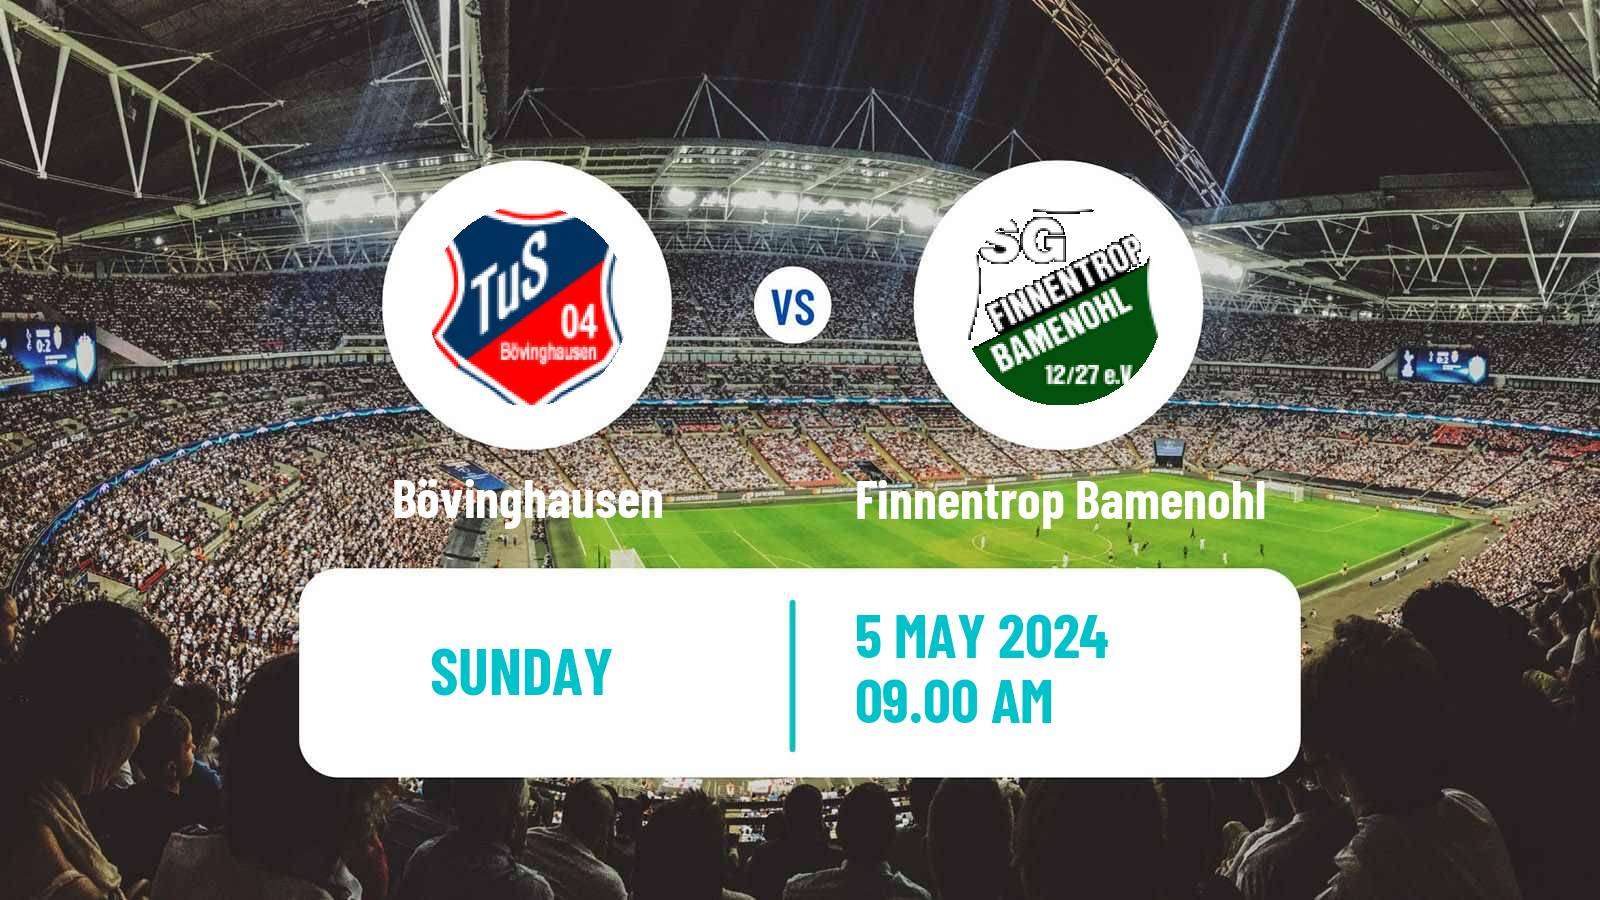 Soccer German Oberliga Westfalen Bövinghausen - Finnentrop Bamenohl